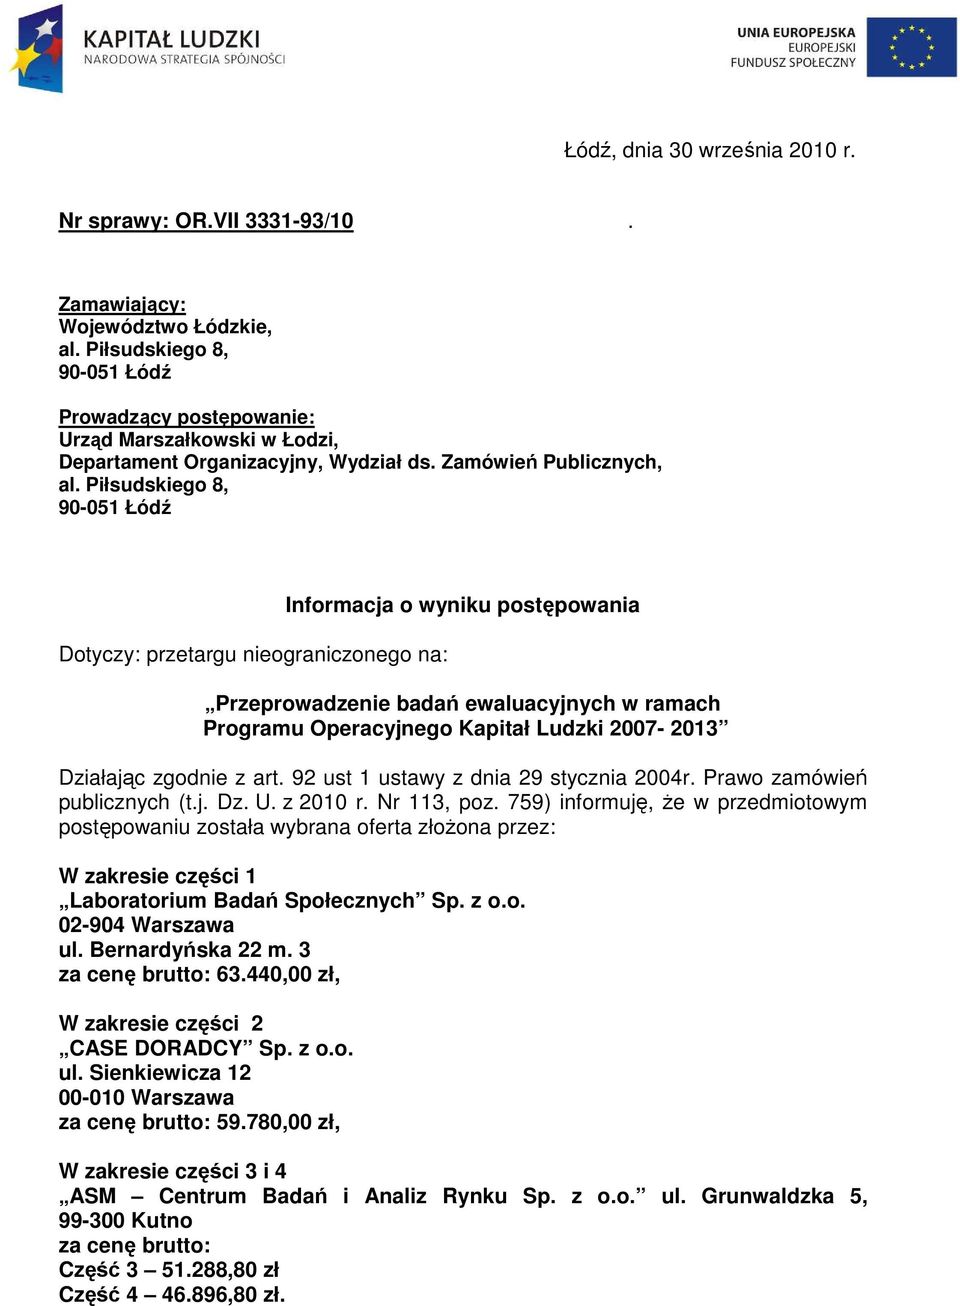 Piłsudskiego 8, 90-0 Łódź Dotyczy: przetargu nieograniczonego na: Informacja o wyniku postępowania Przeprowadzenie badań ewaluacyjnych w ramach Programu Operacyjnego Kapitał Ludzki 2007-20 Działając